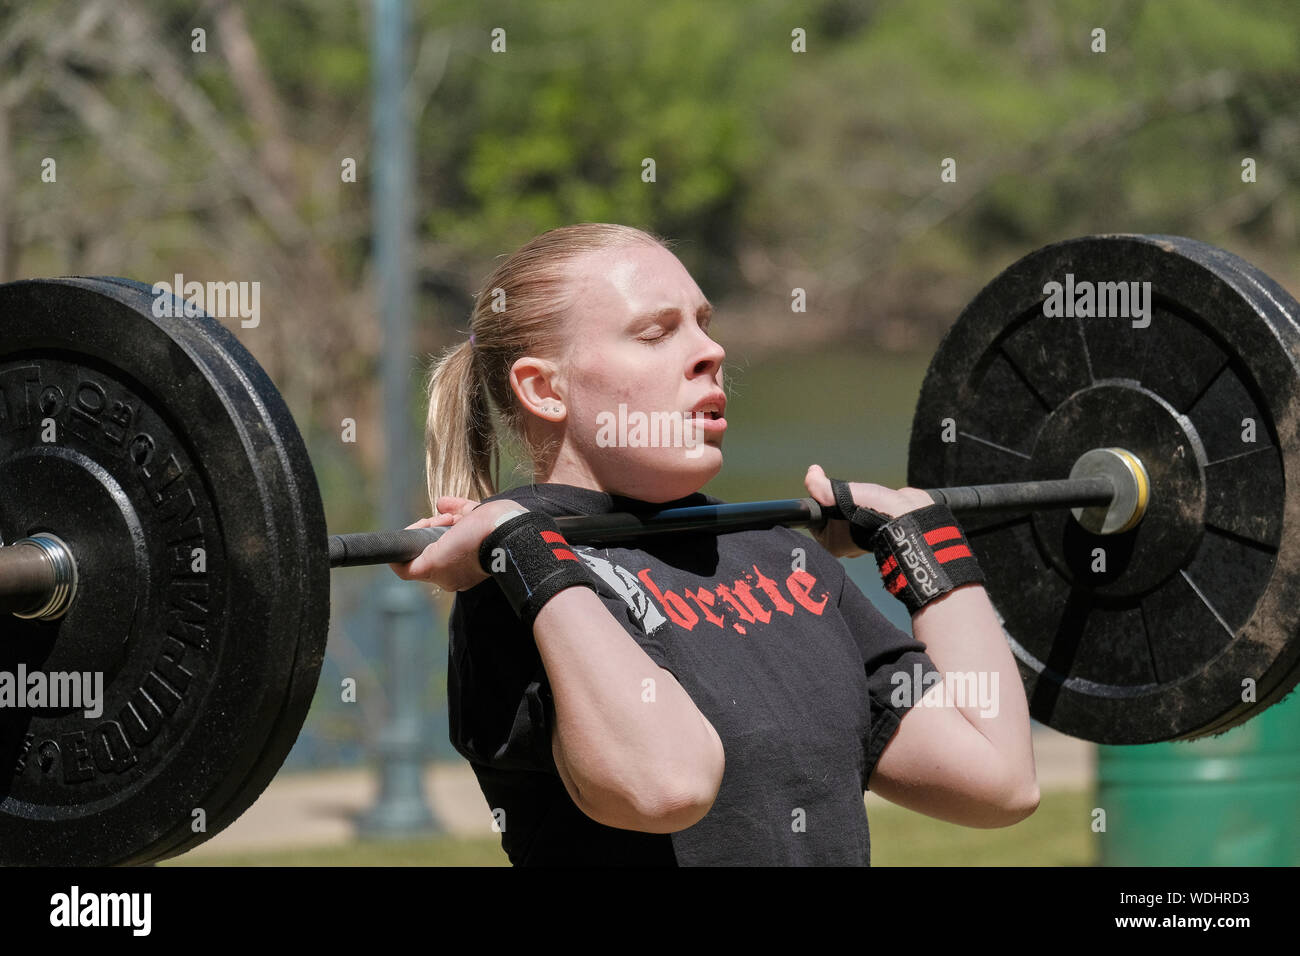 Mujer o mujer que compite en un gimnasio CrossFit desafío la competencia por muertos, el levantamiento de pesas o halterofilia. Foto de stock